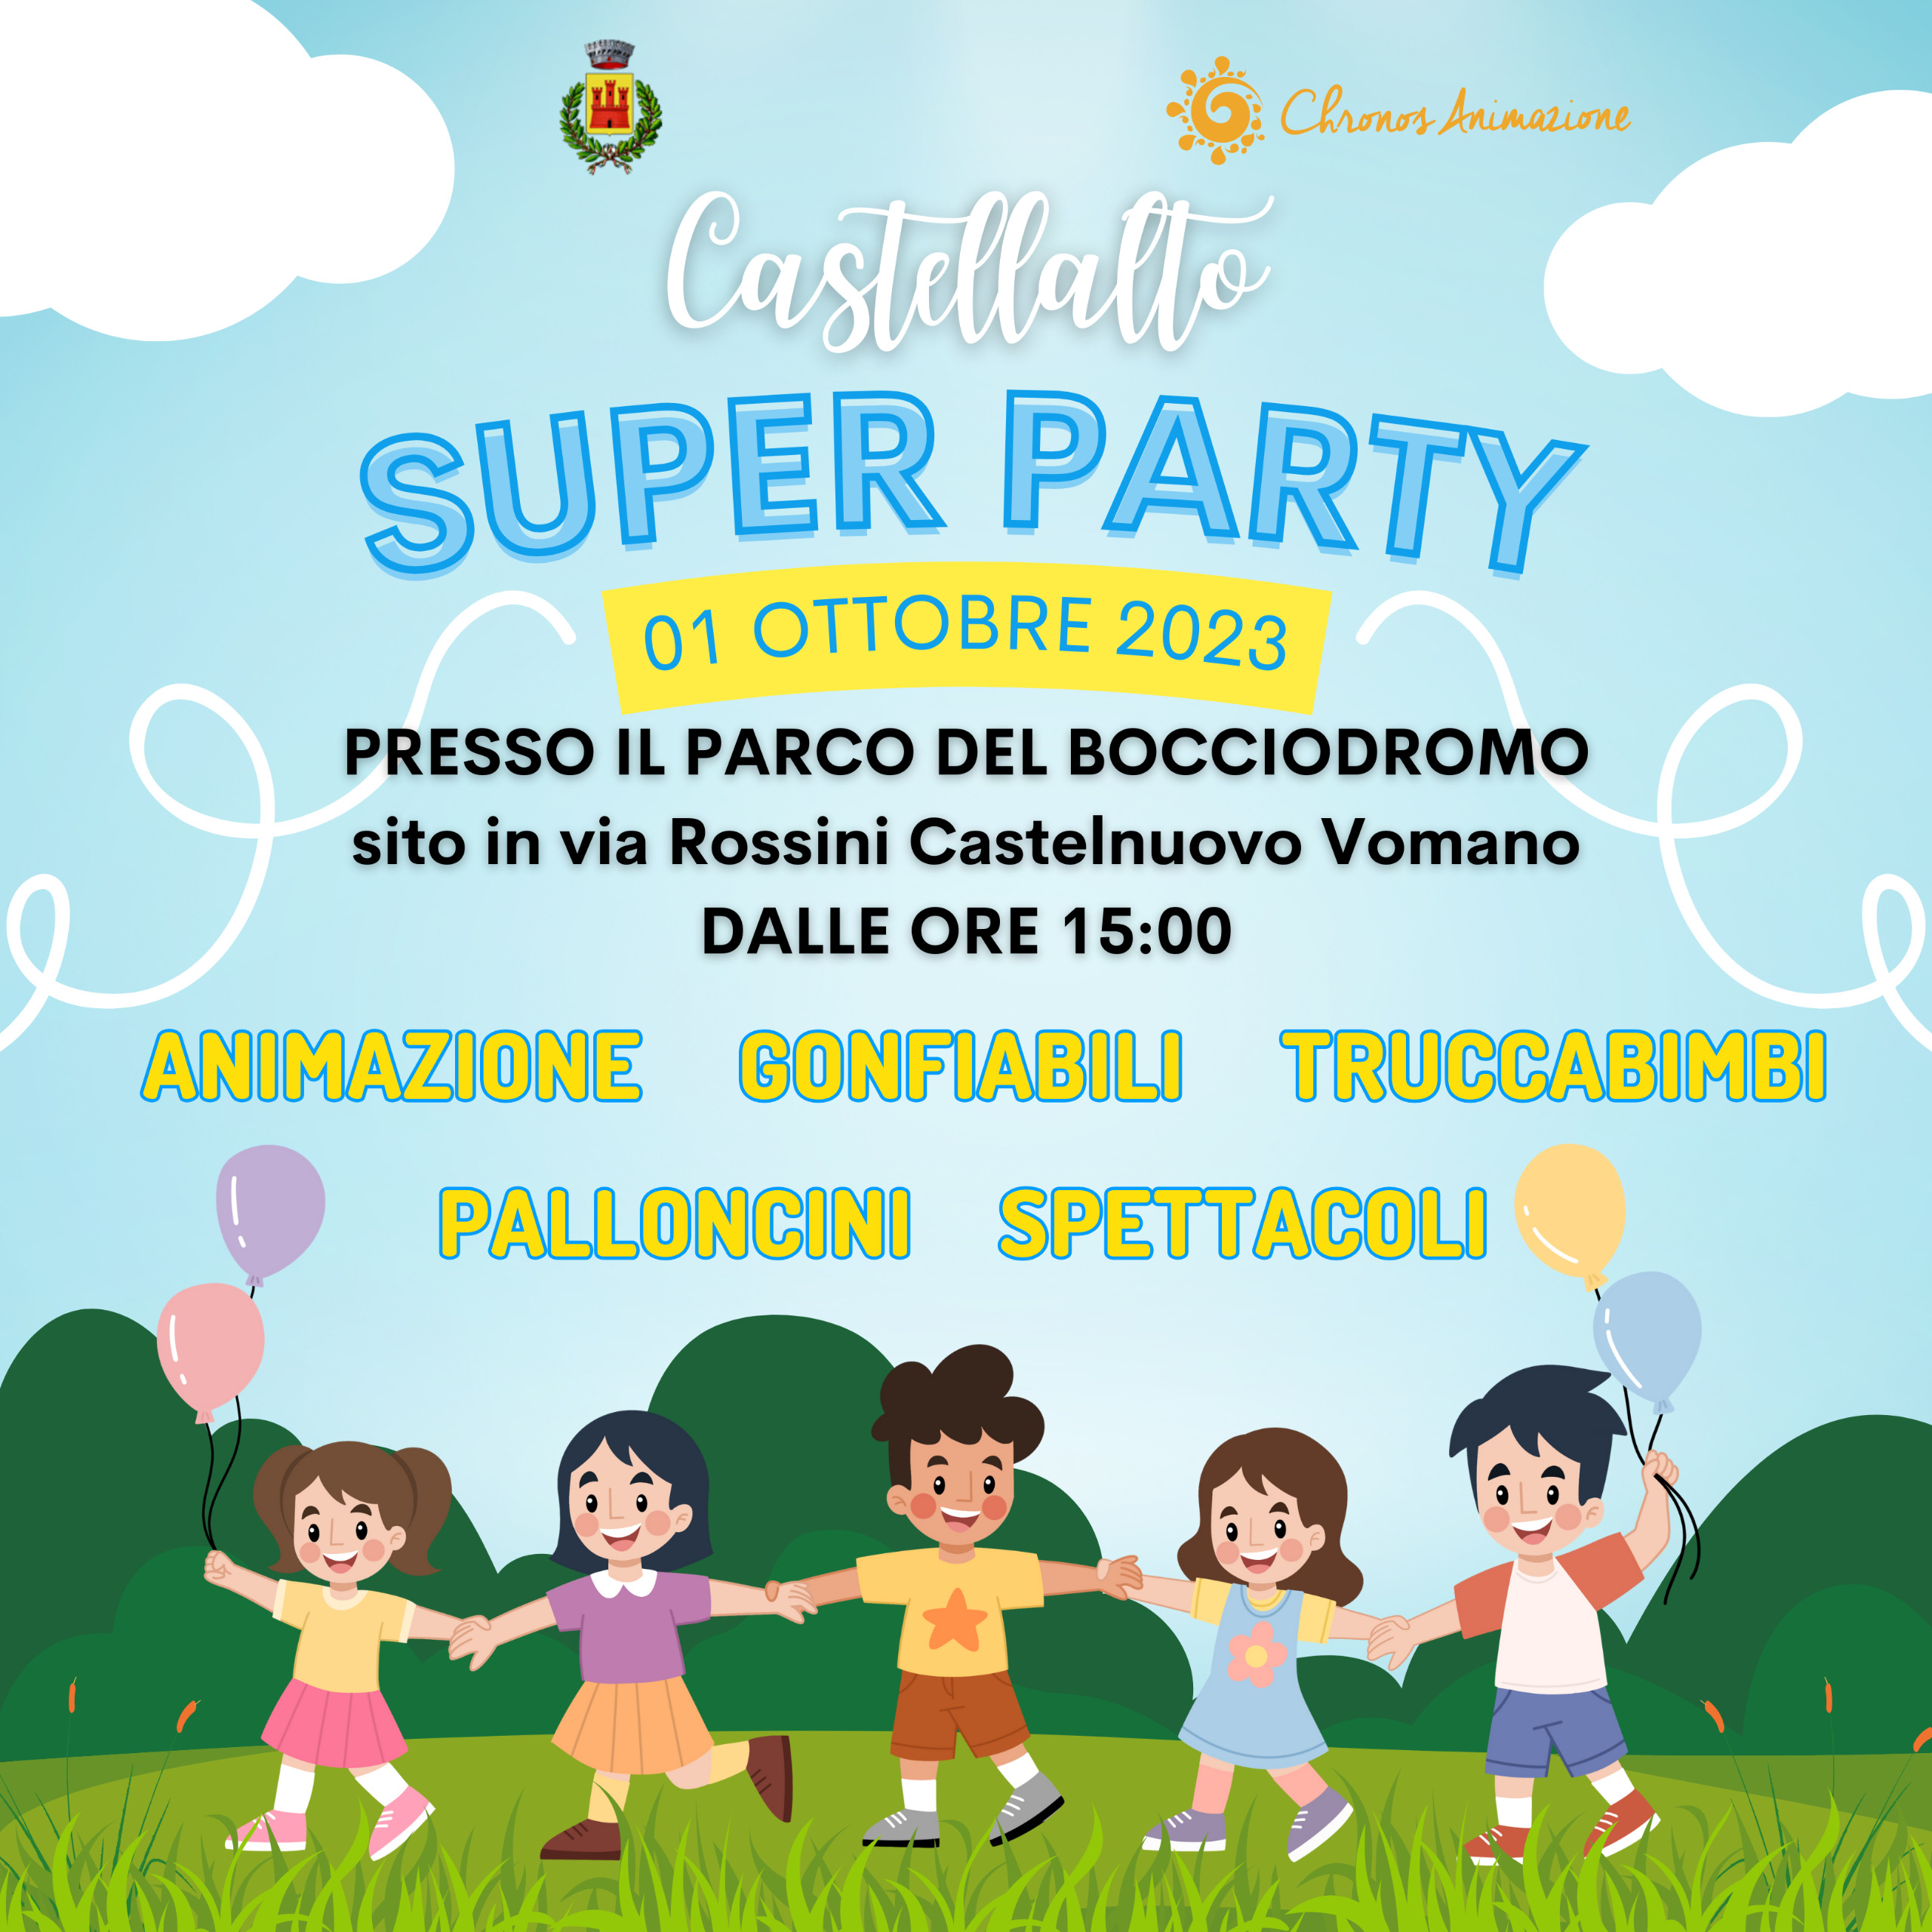 SUPER PARTY Domenica 1° Ottobre 2023  dalle ore 15:00 alle ore 19:00 presso il parco del Bocciodromo sito in Via Rossini a Castelnuovo Vomano.